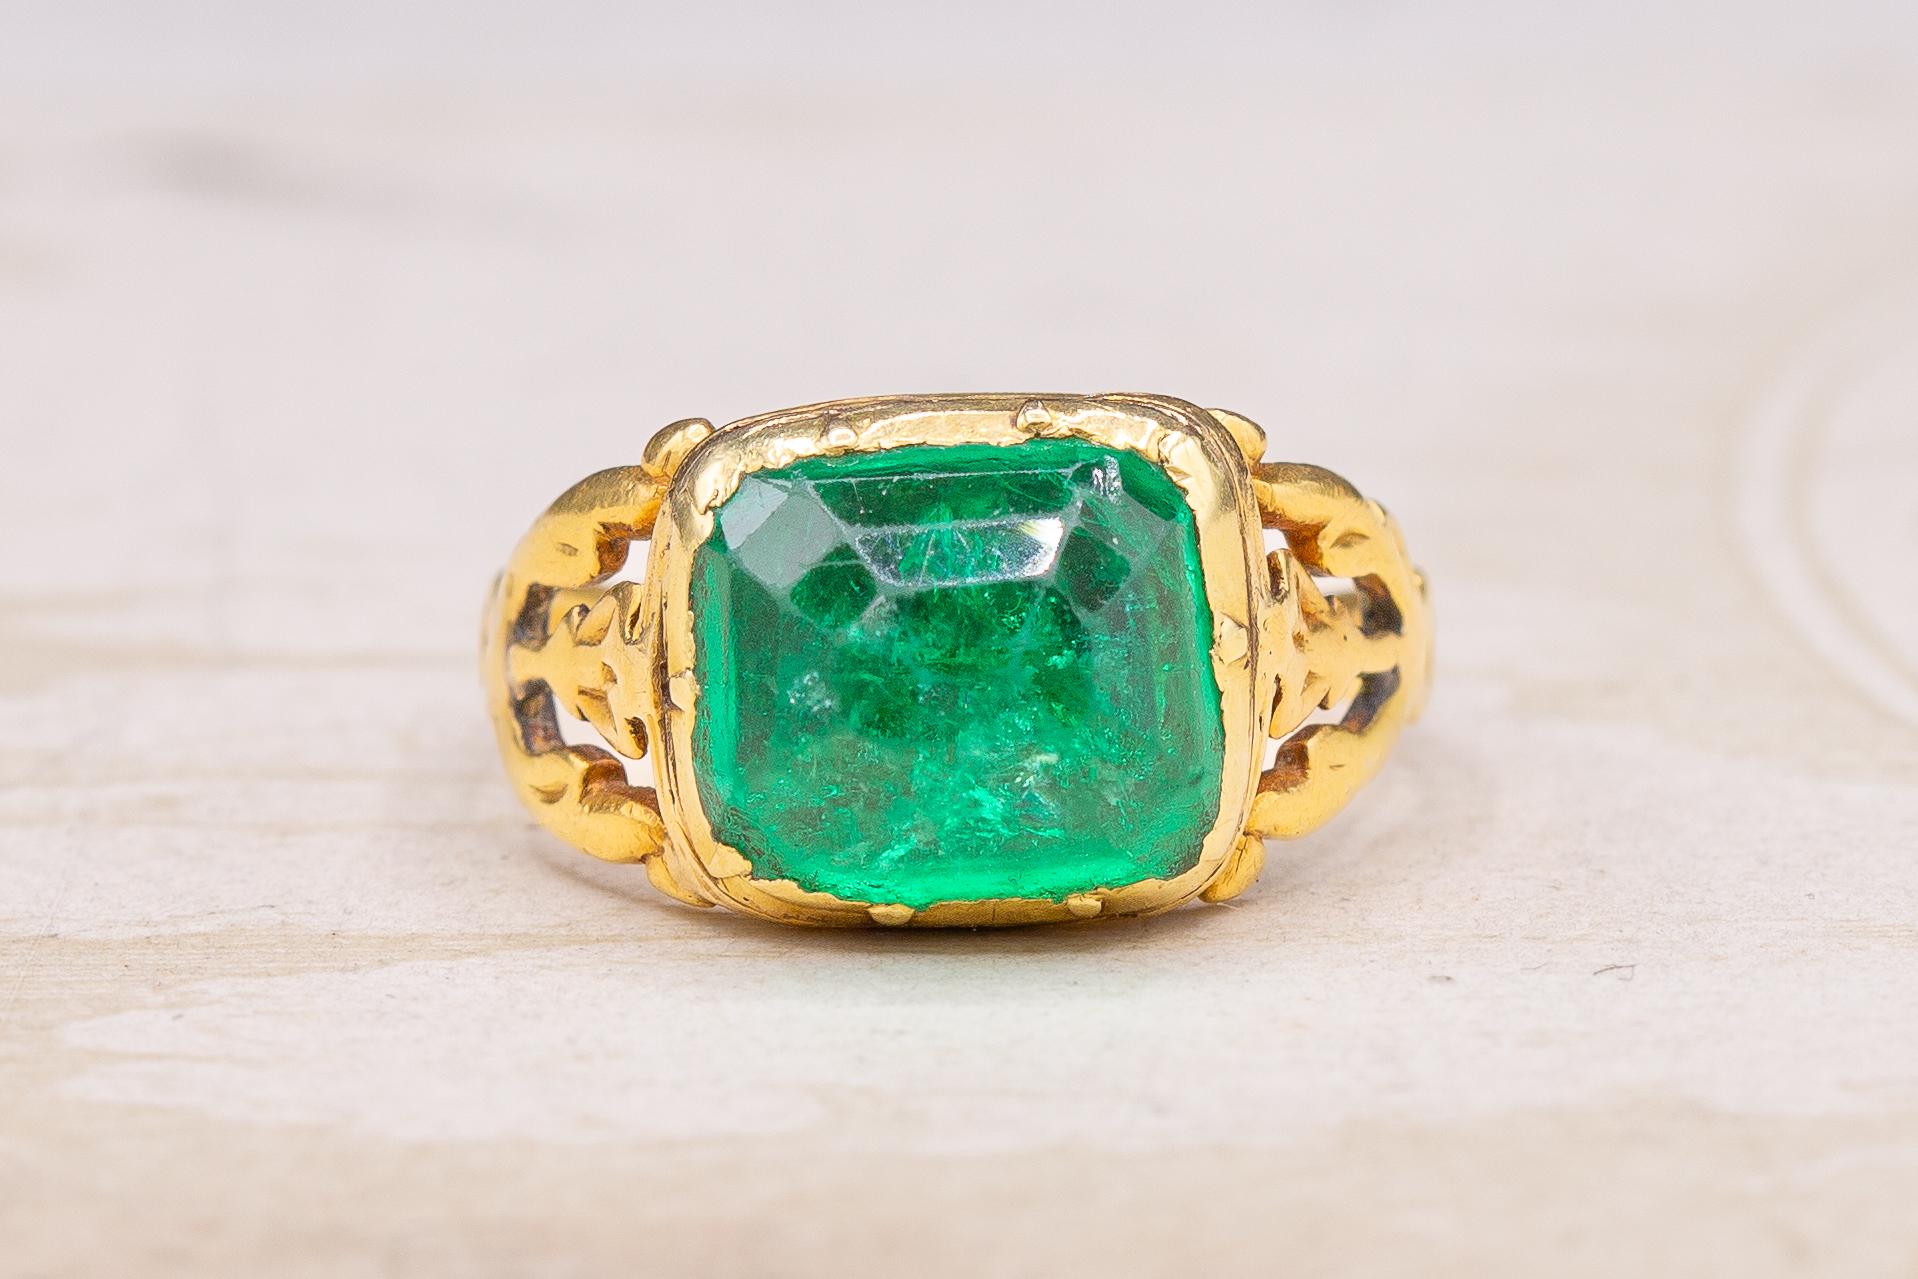 Ein seltener Ring aus hochkarätigem Gold und Smaragd aus dem späten 18. Jahrhundert, um 1780. 

Dieser prächtige Goldring ist mit einem großen, facettierten, natürlichen Smaragd besetzt, der etwa 5cts wiegt. Der Smaragd ist kolumbianischen